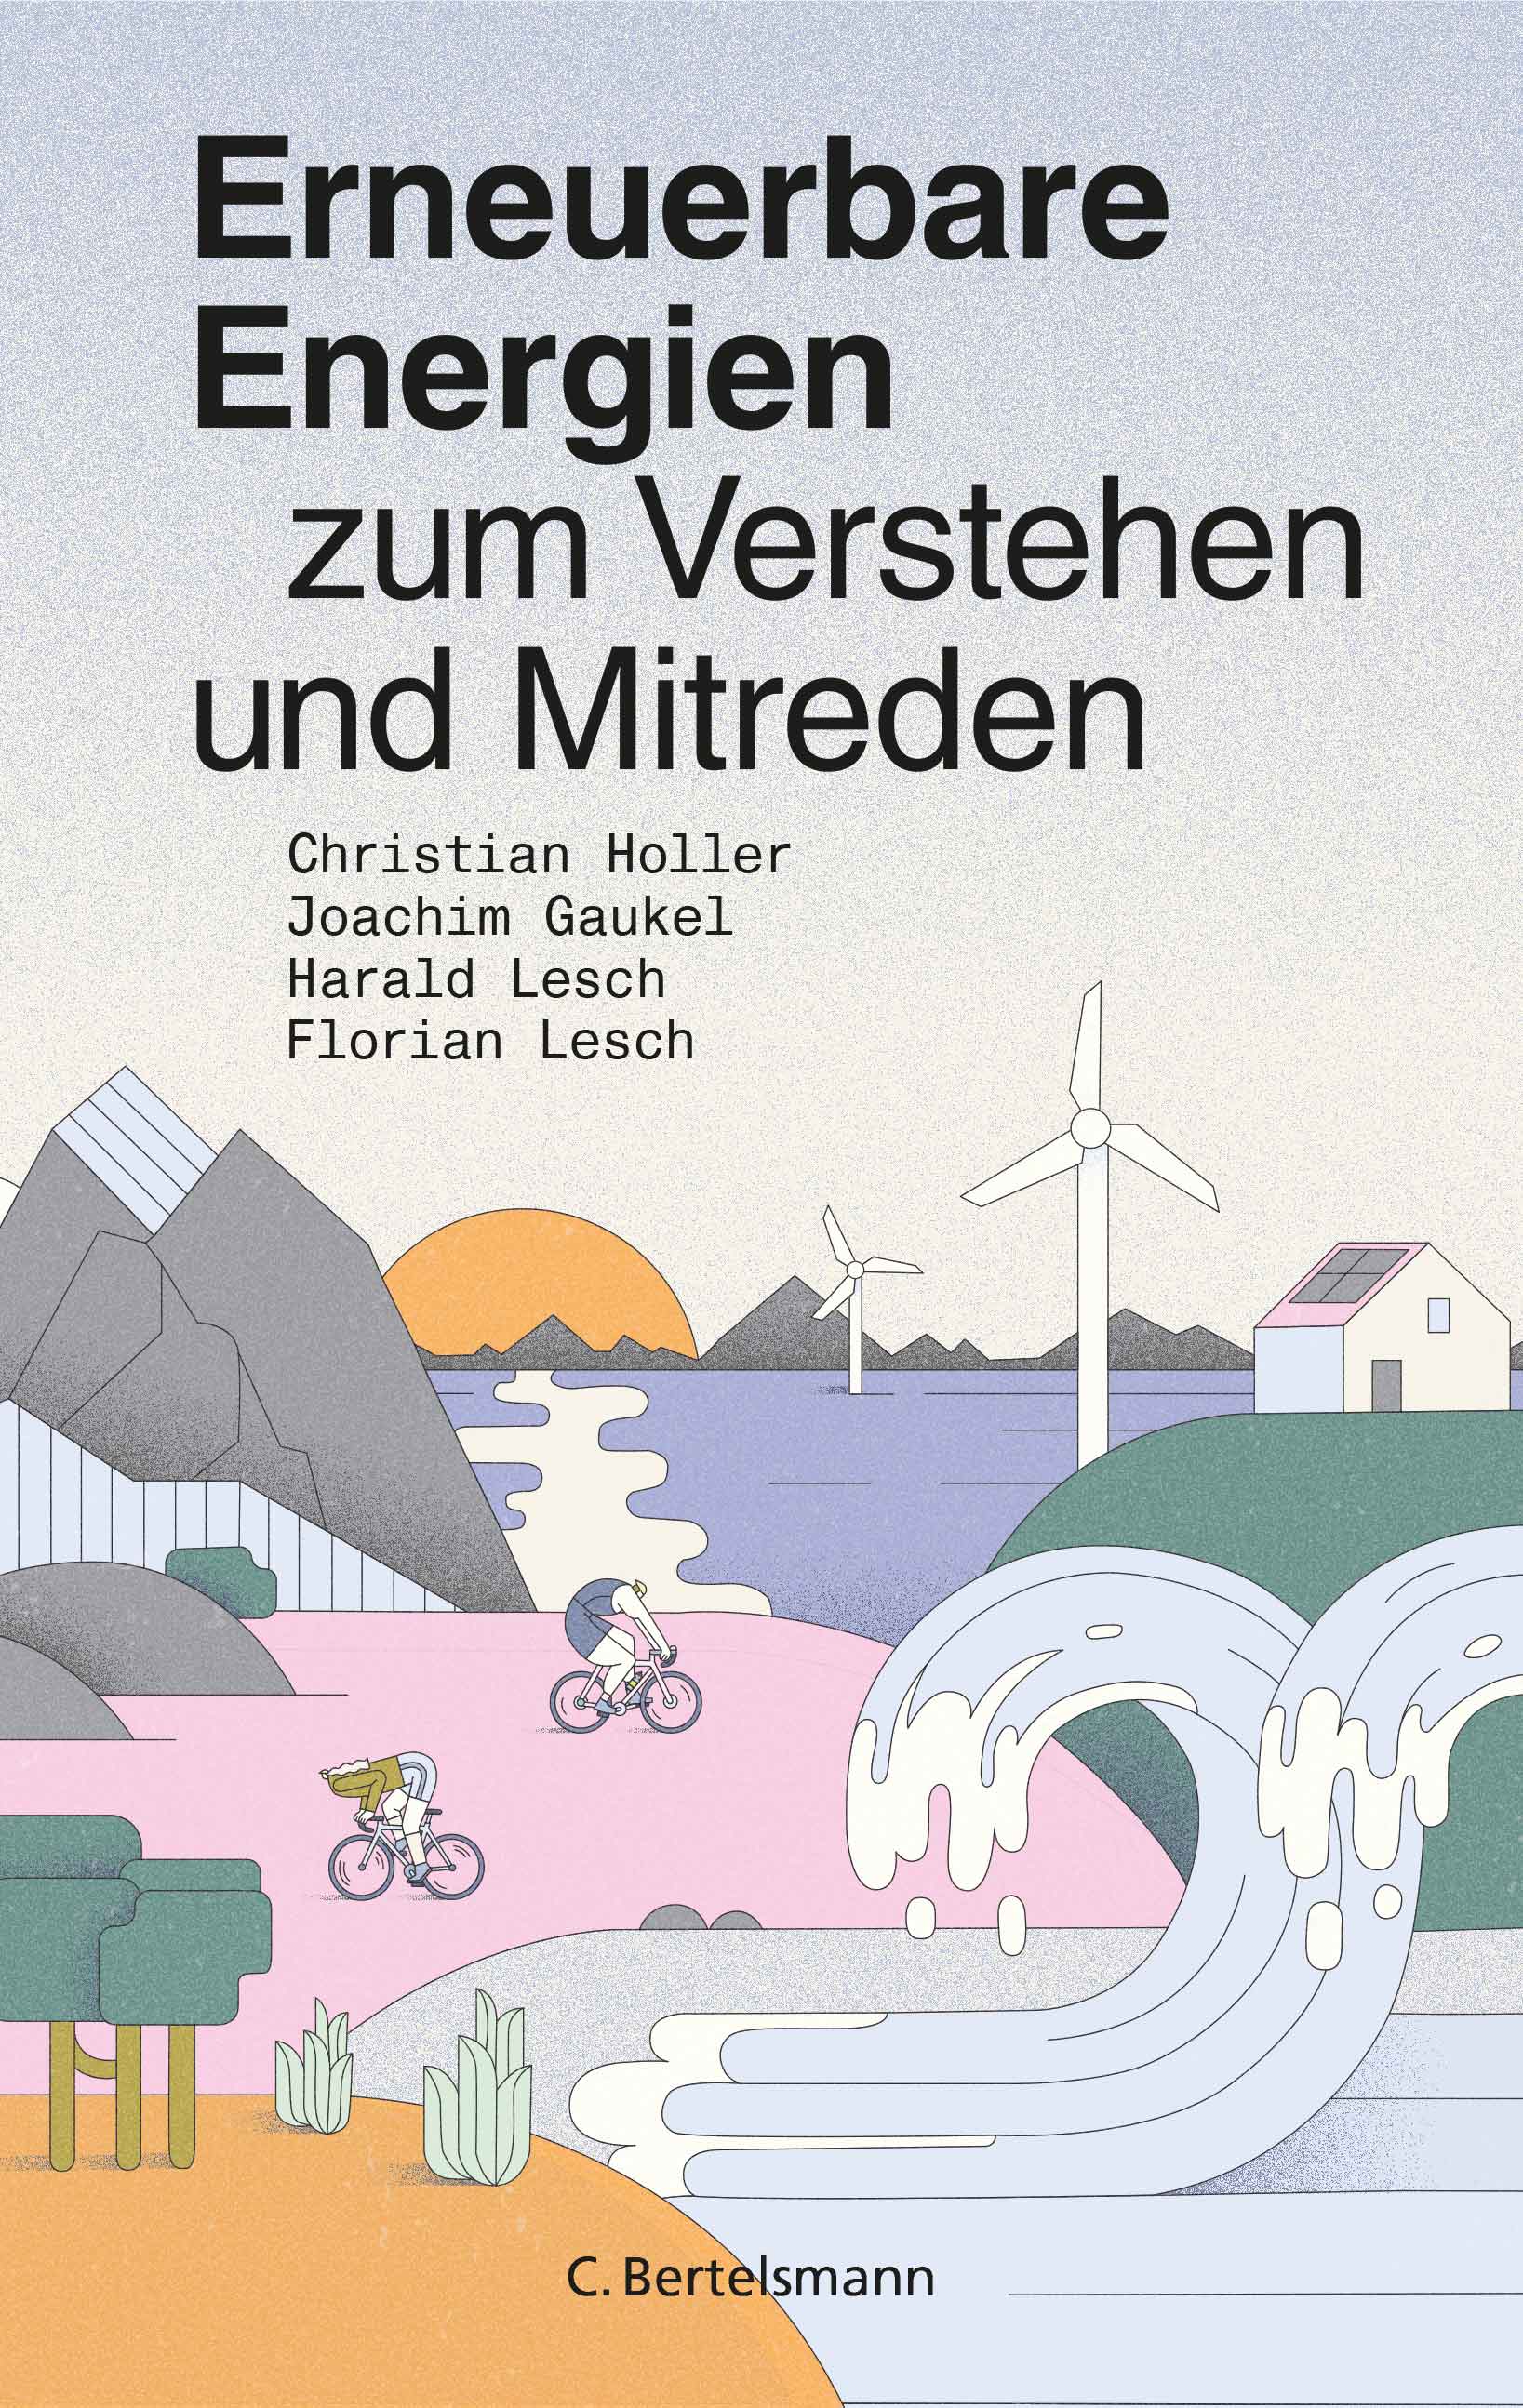 Das Buchcover zeigt eine gezeichnete Küstenlandschaft mit auftürmenden Wellen und Fahrradfahrern auf einem Hügel. Im Hintergrund sind Windräder zu sehen.